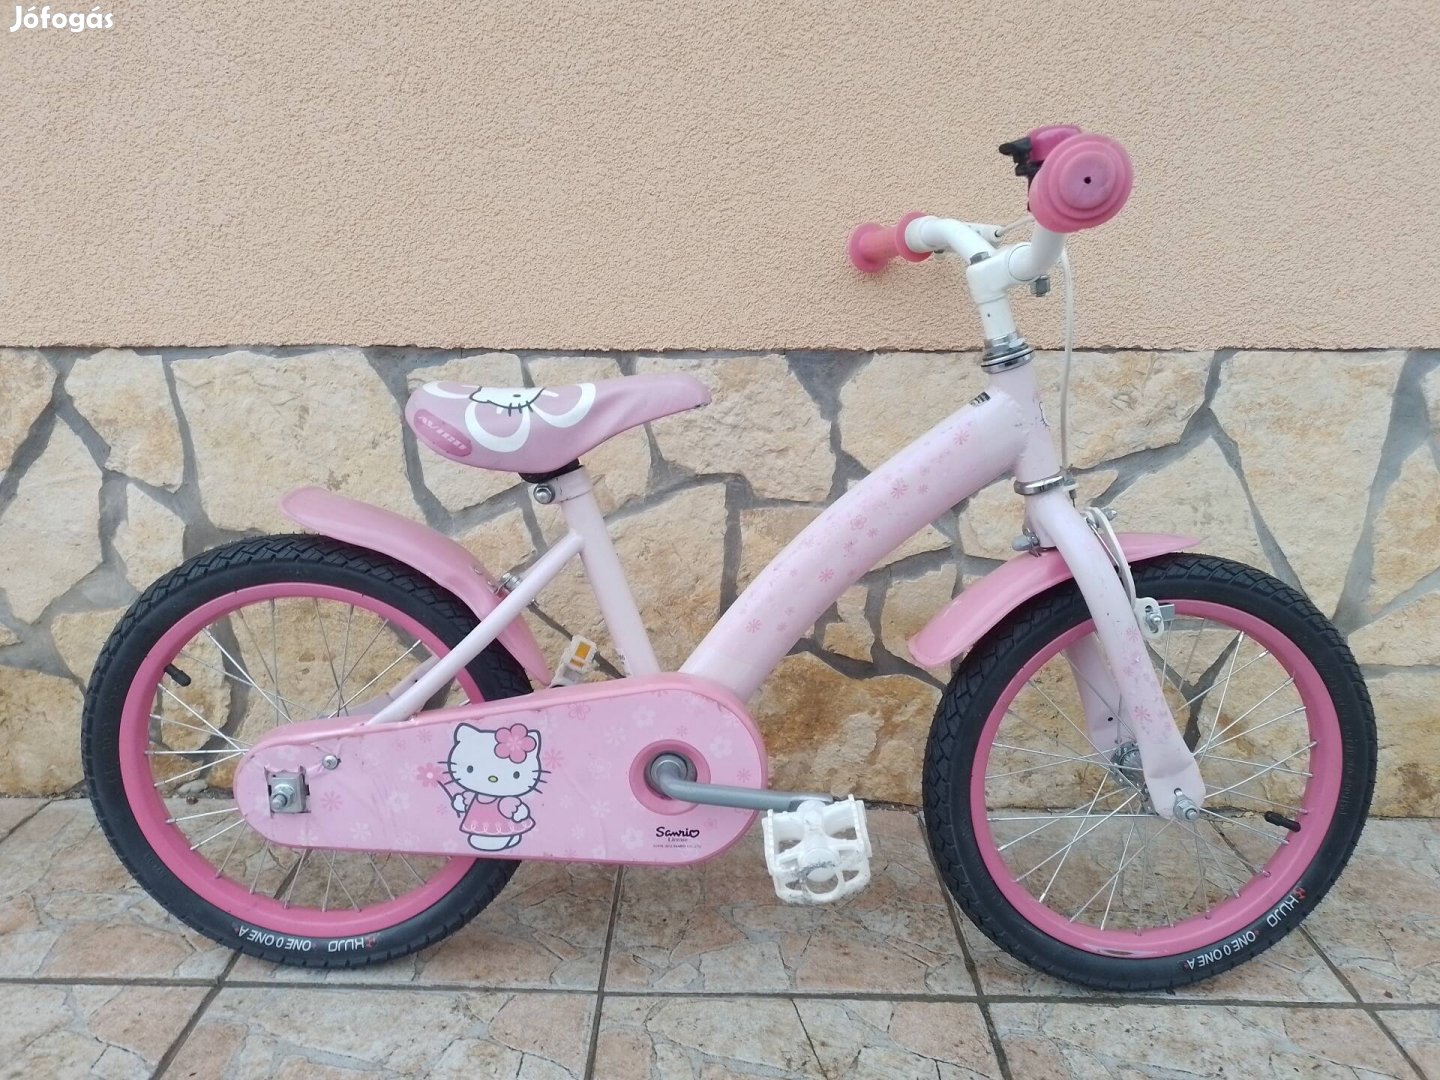 16-os Hello Kitty kontrafékes kislány kerékpár új gumikkal. 